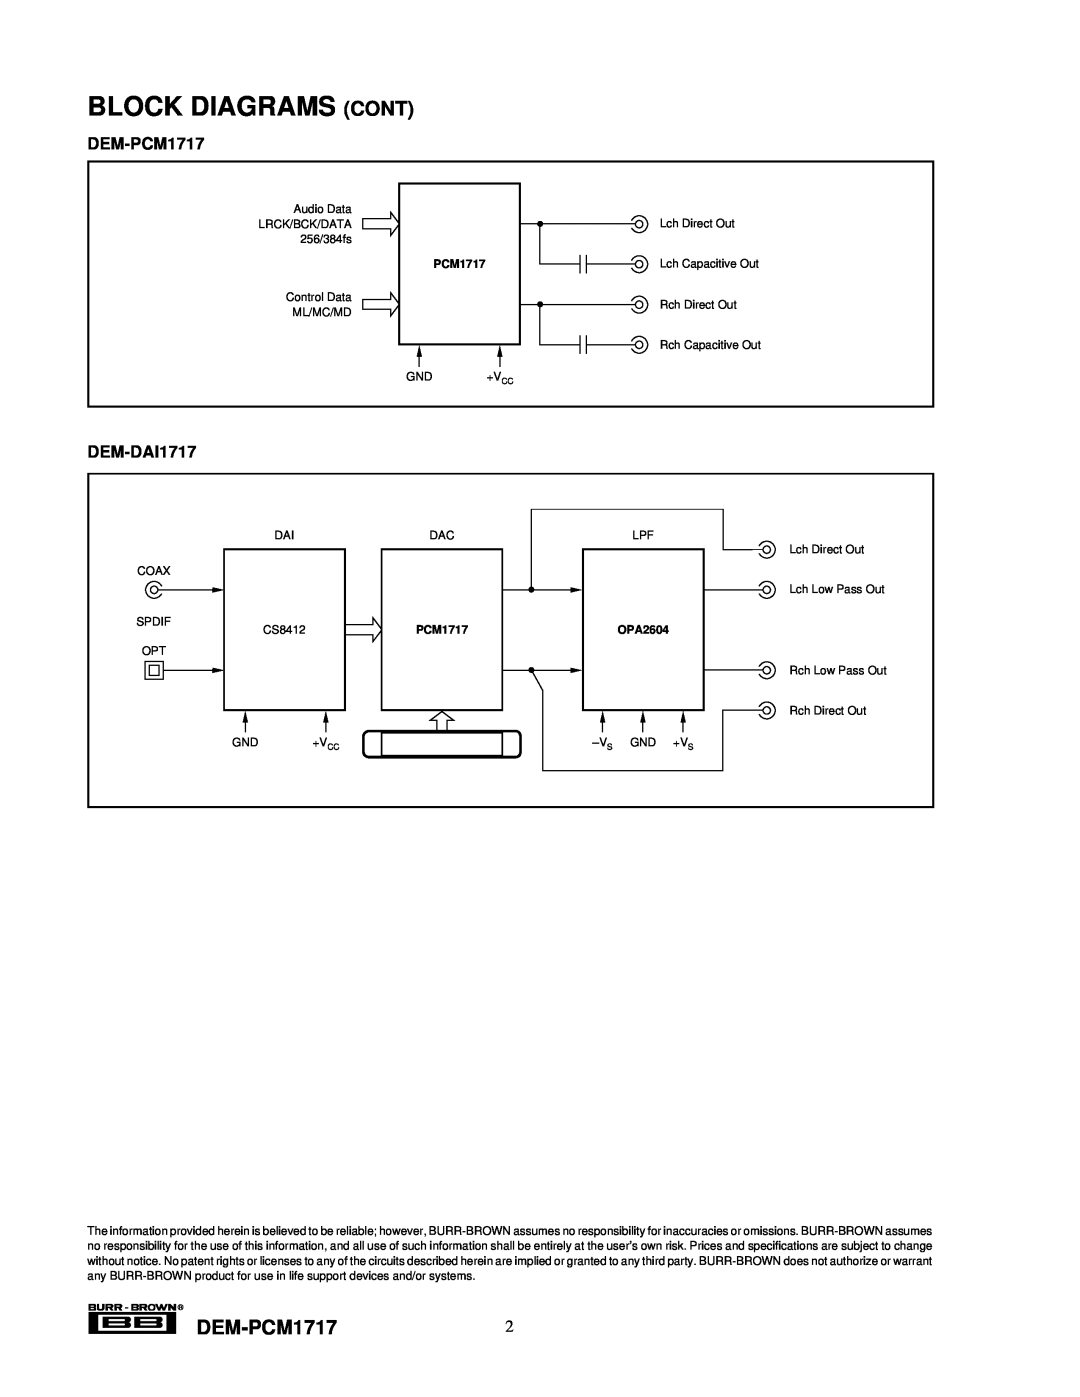 Texas Instruments manual Block Diagrams Cont, DEM-PCM17172, DEM-DAI1717, OPA2604 